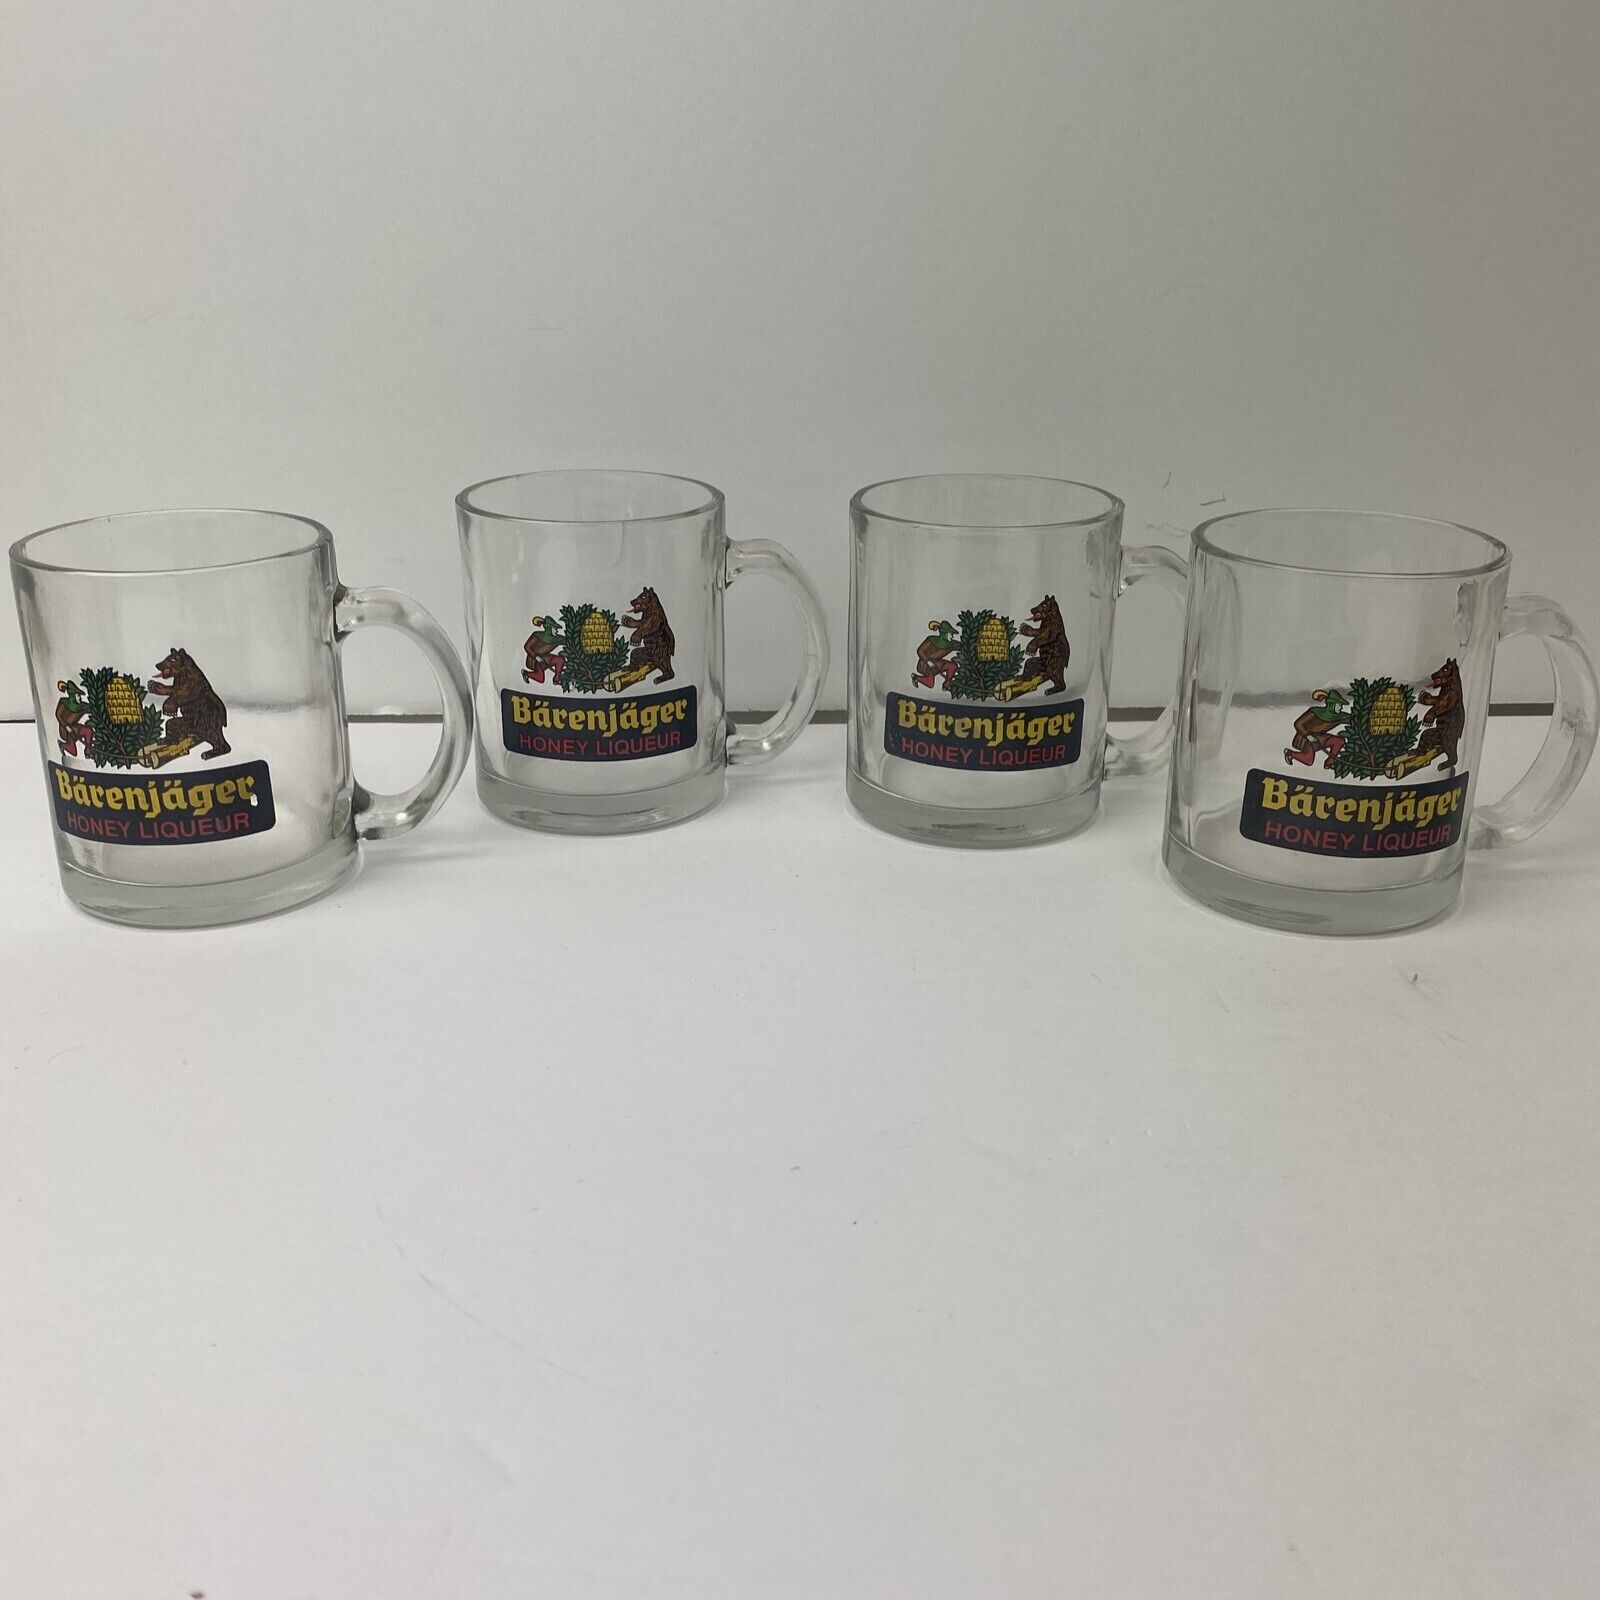 BARENJAGER HONEY LIQUEUR Glass Mug German Beverage Cup BEAR BEE Vintage LOT OF 4